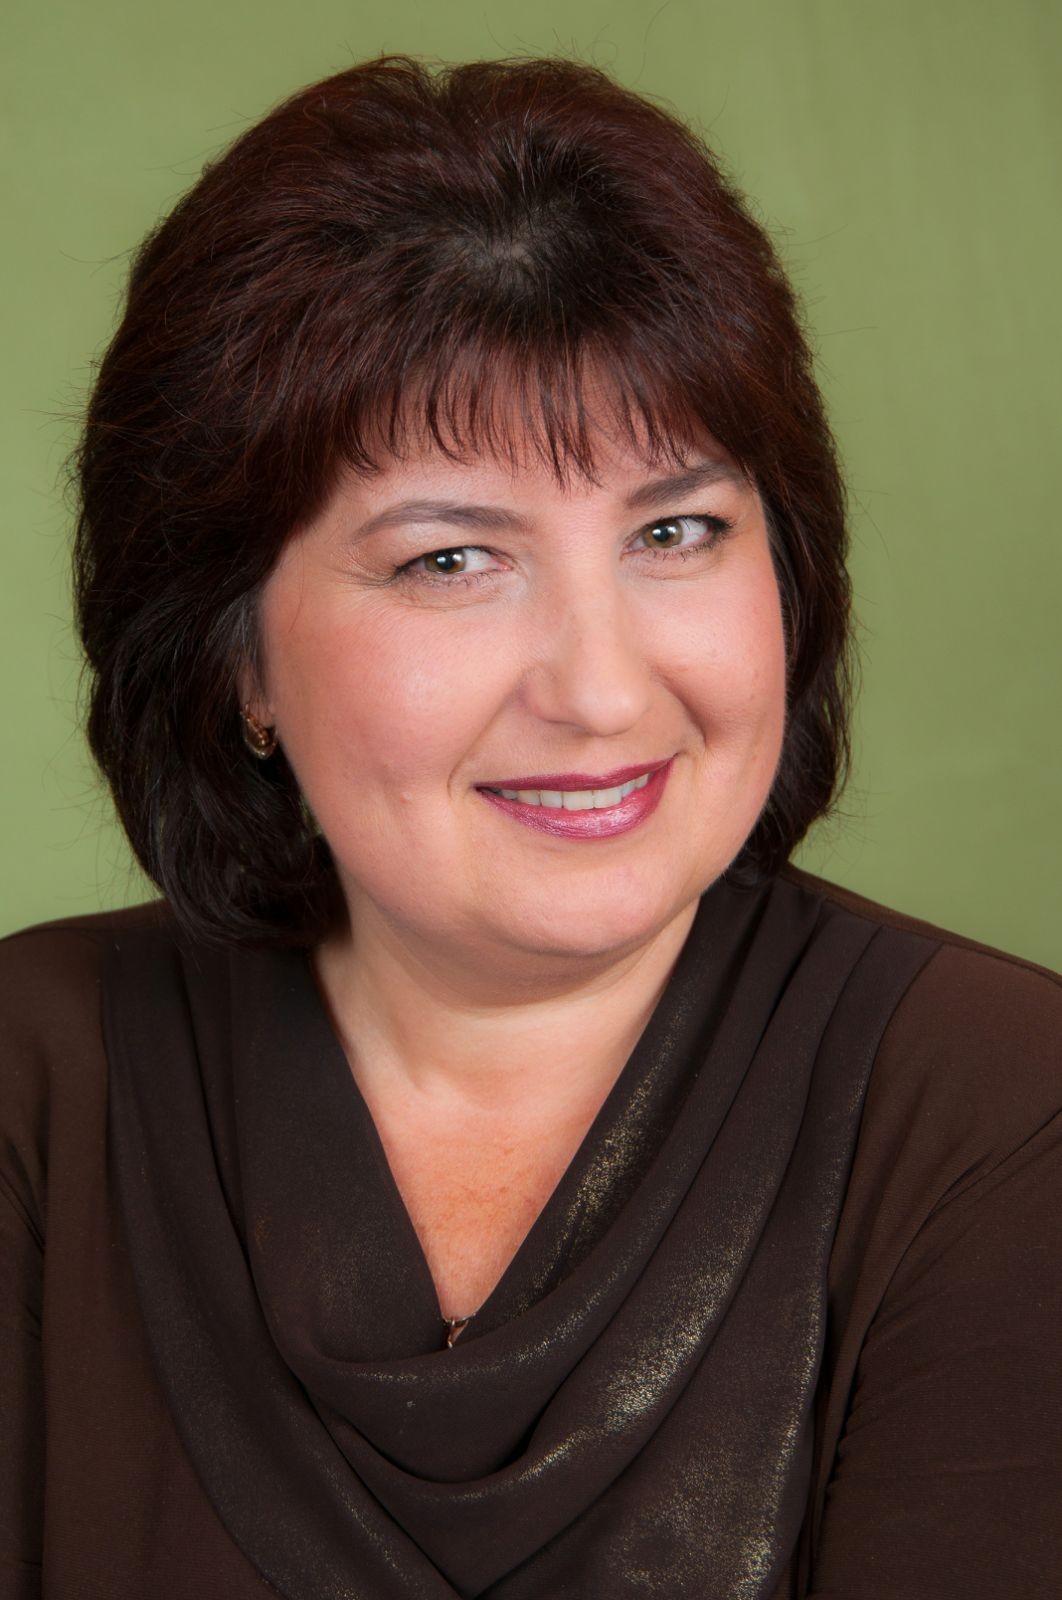 Таїсія  Примак - Психотерапевт, Психолог, Семейный психолог, Супервизор